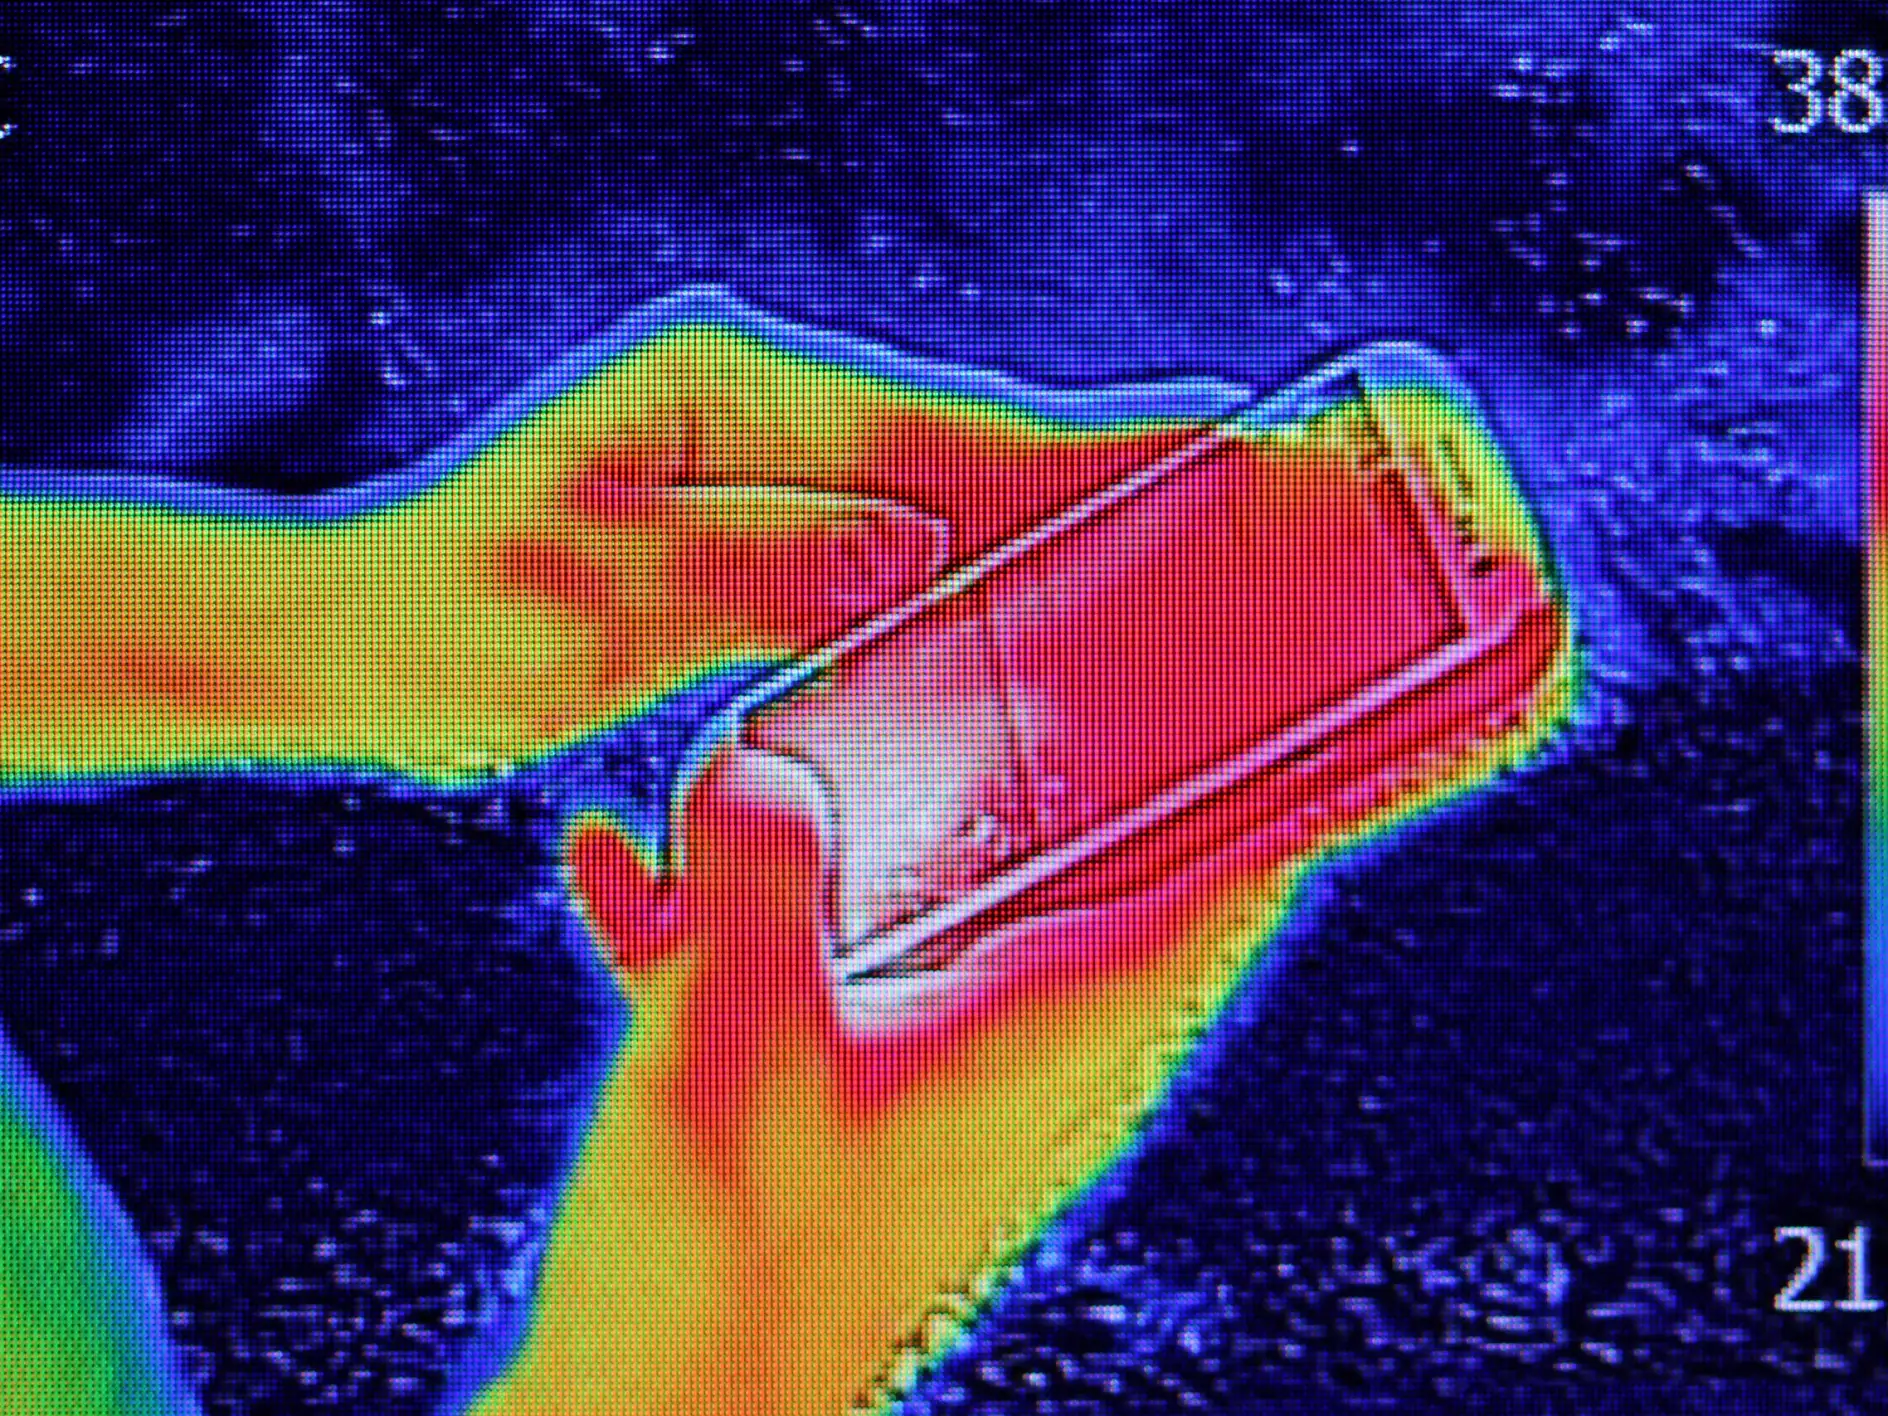 Immagine termografica a infrarossi che mostra l'emissione di calore quando la ragazza utilizza lo smartphone o il telefono cellulare